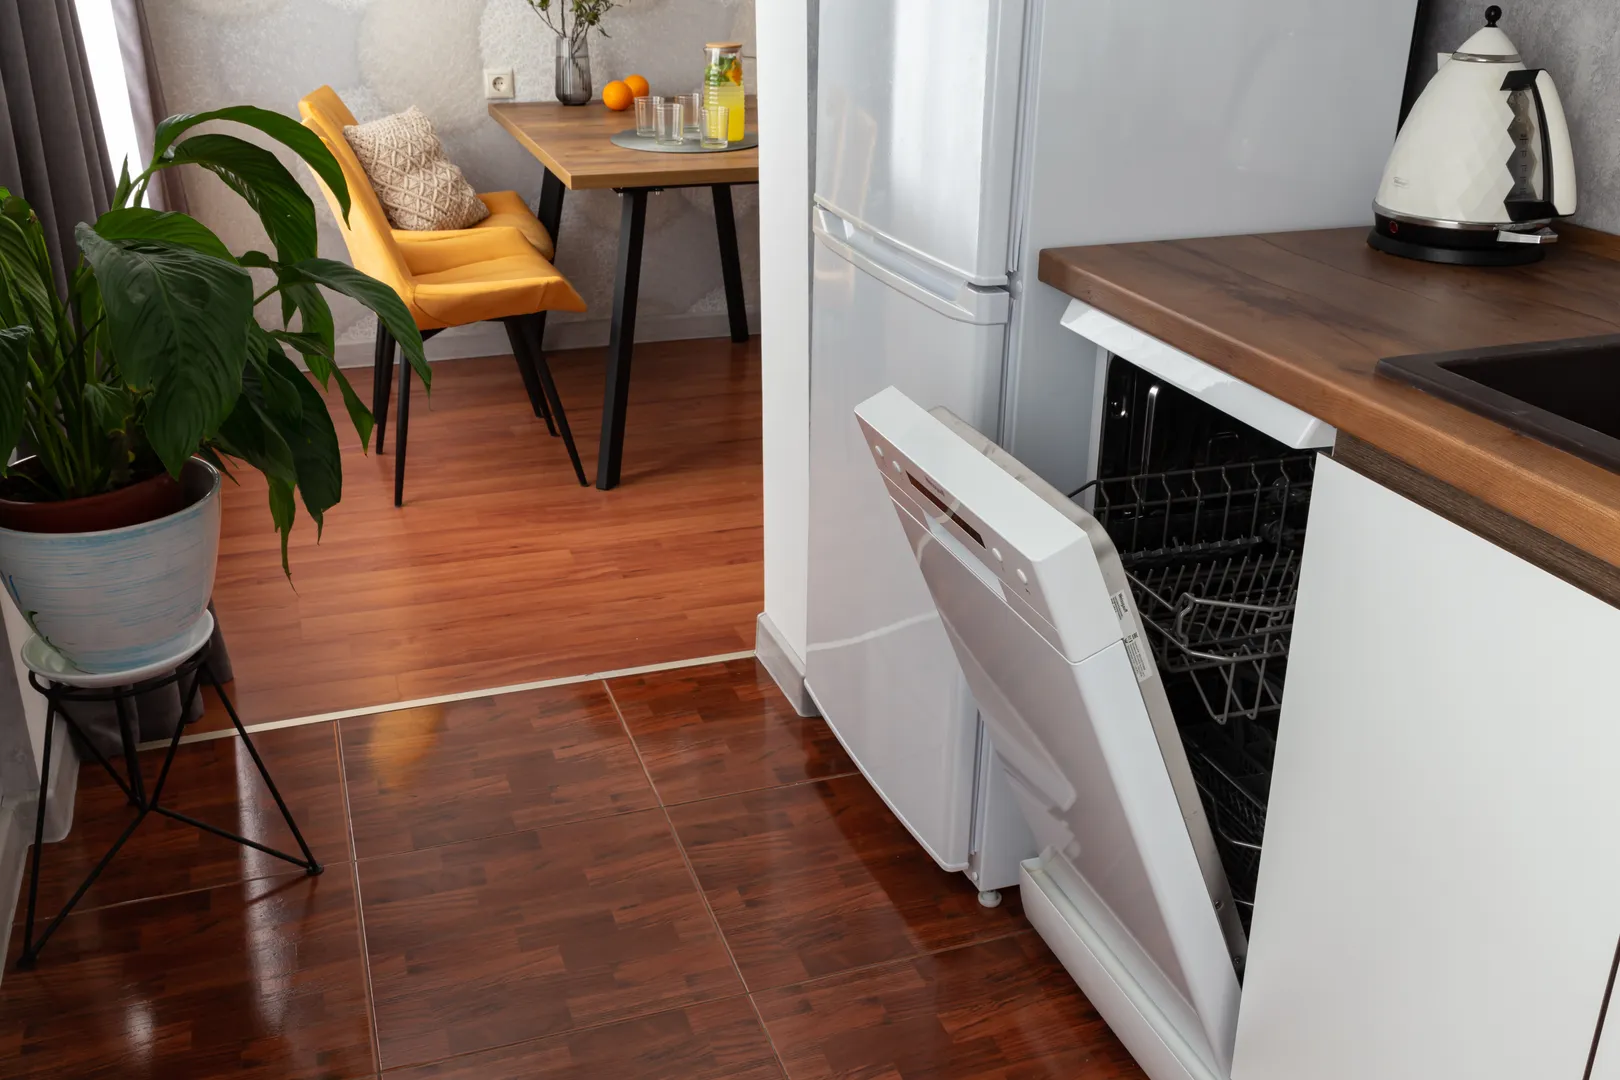 Оборудованная кухня: посудомоечная машина с бесплатными капсулами, холодильник и электрический чайник